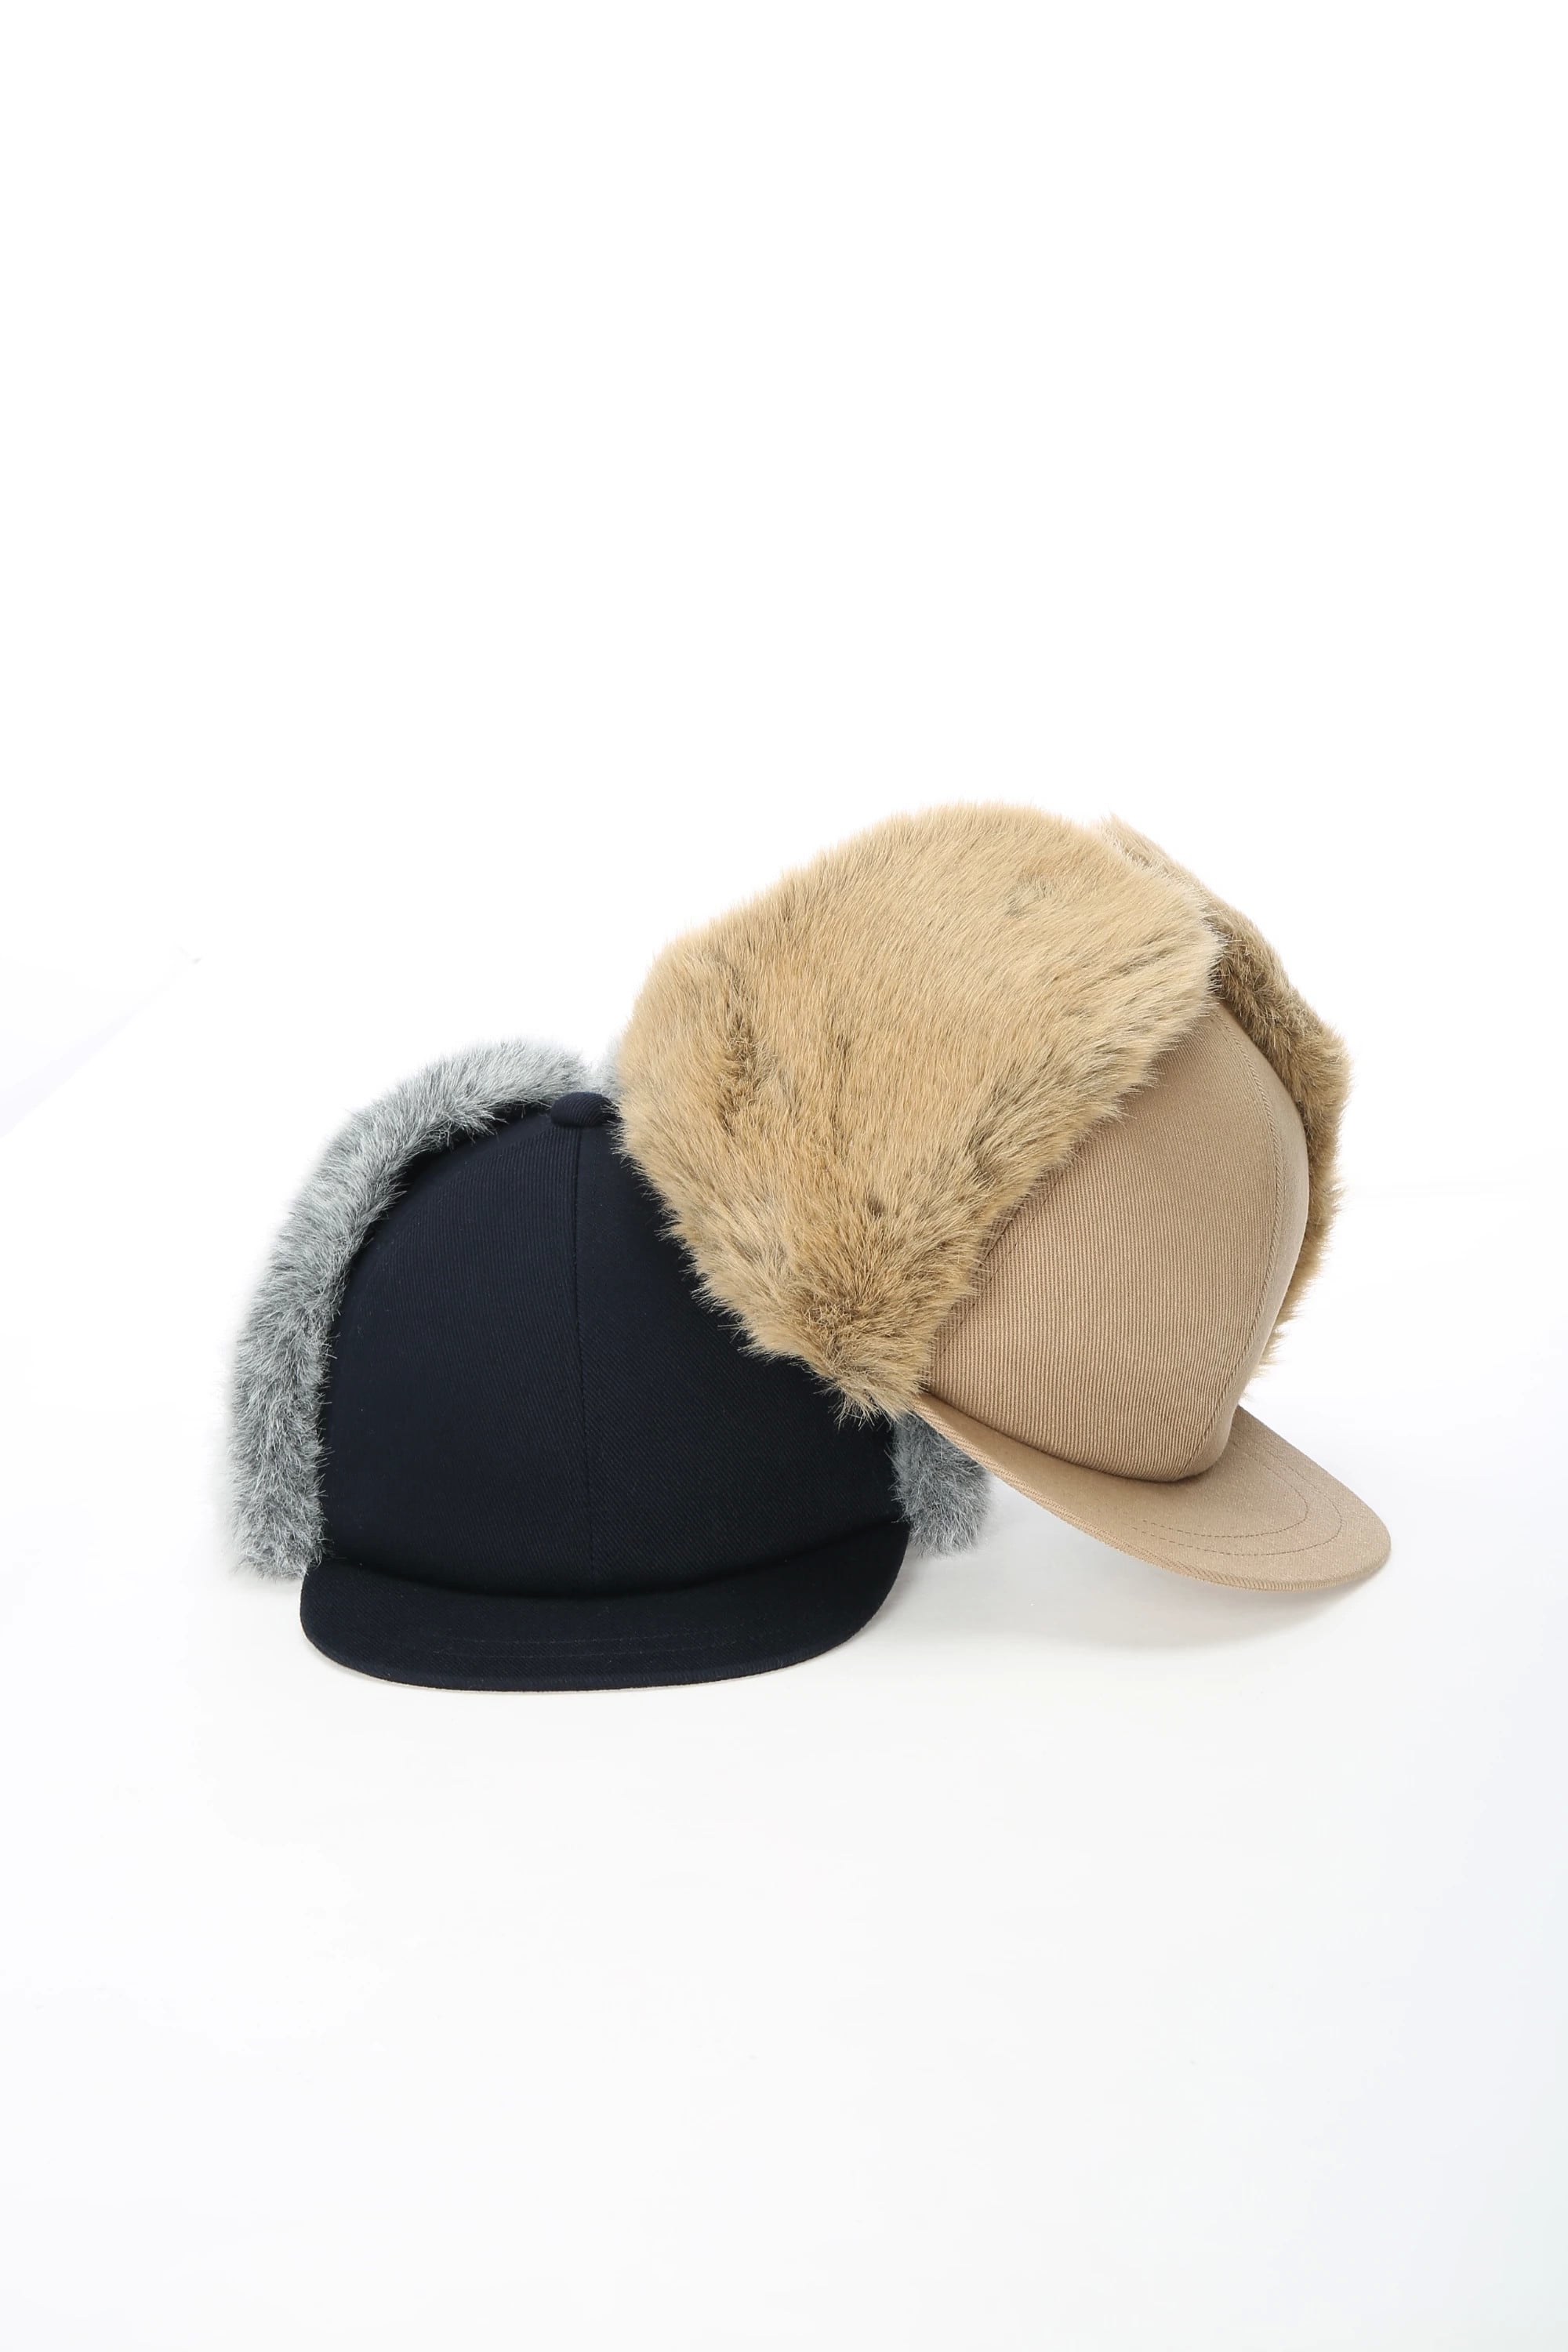 人気の帽子メーカーTAHからセレクトしたハットです。存在感あるデザインが他には出せないTAHの色。WOMの洋服との相性も抜群です。